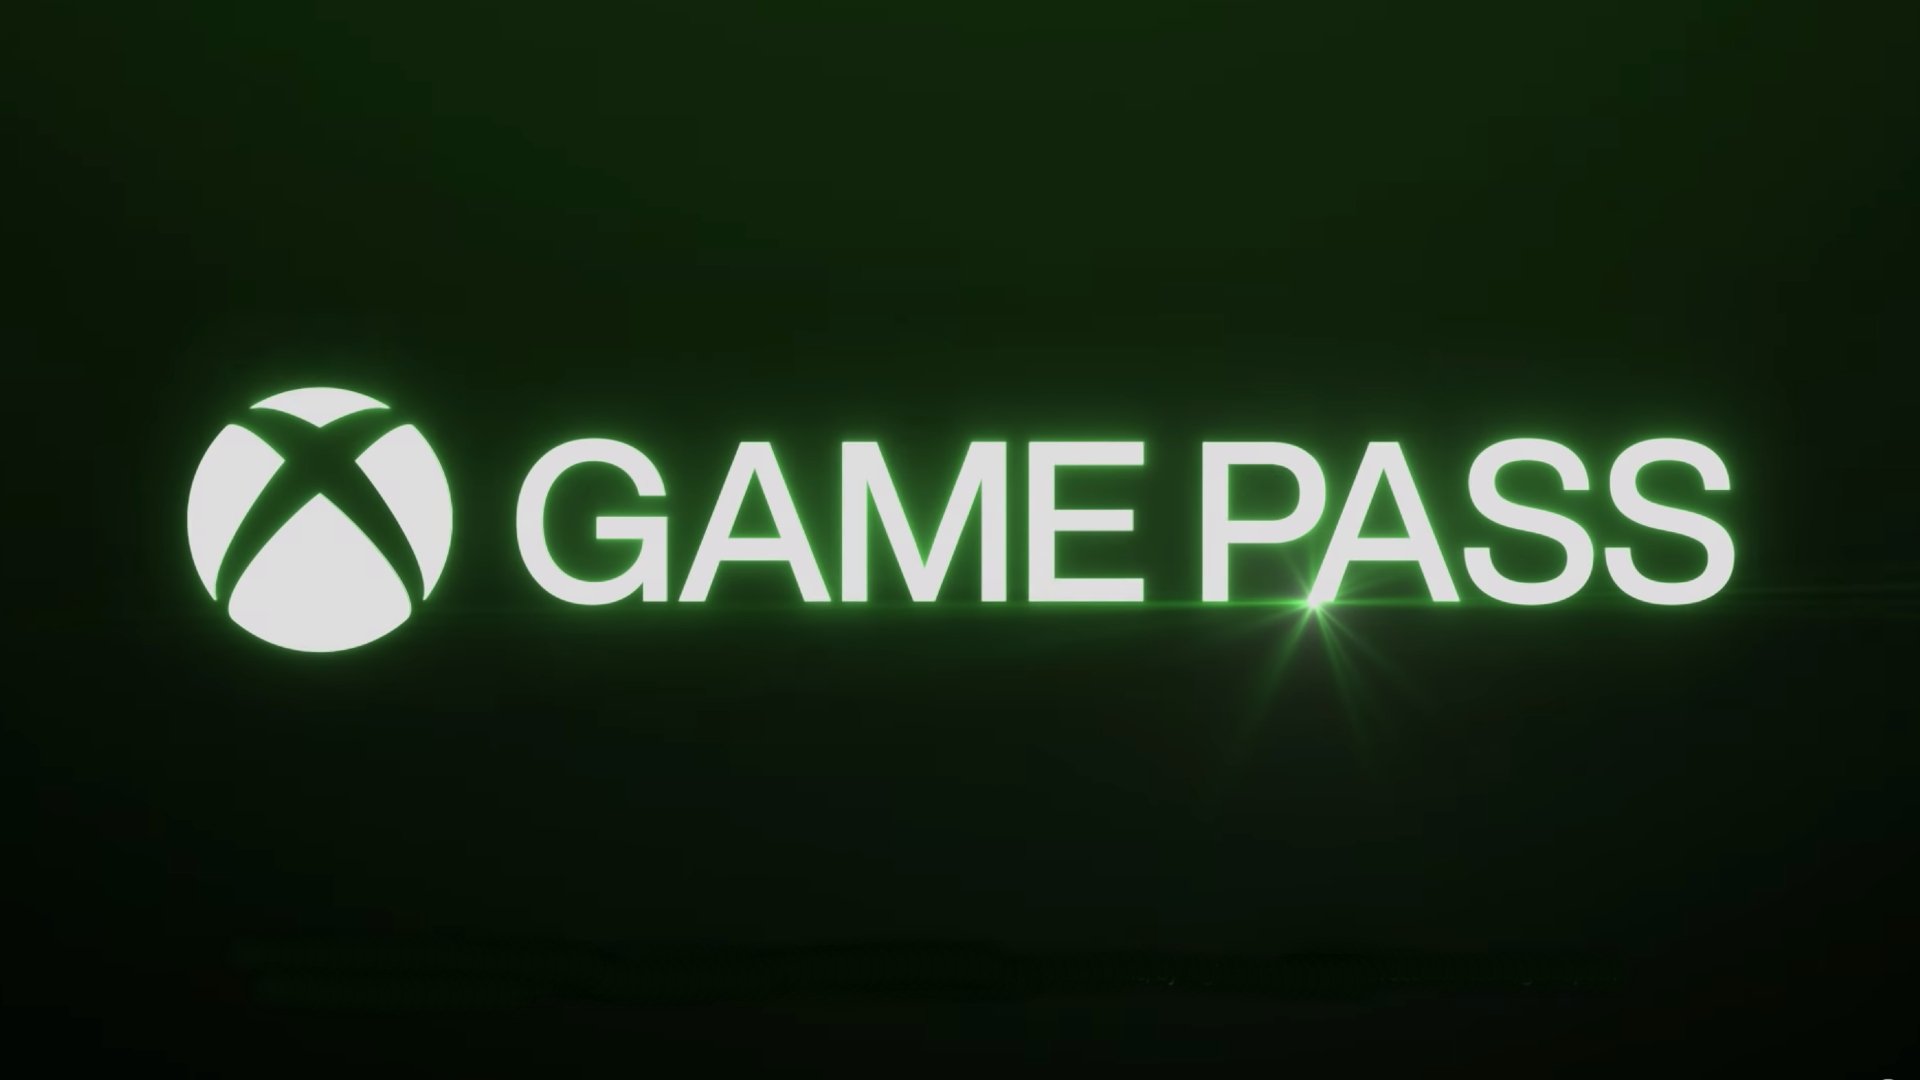 Game Pass logo - green